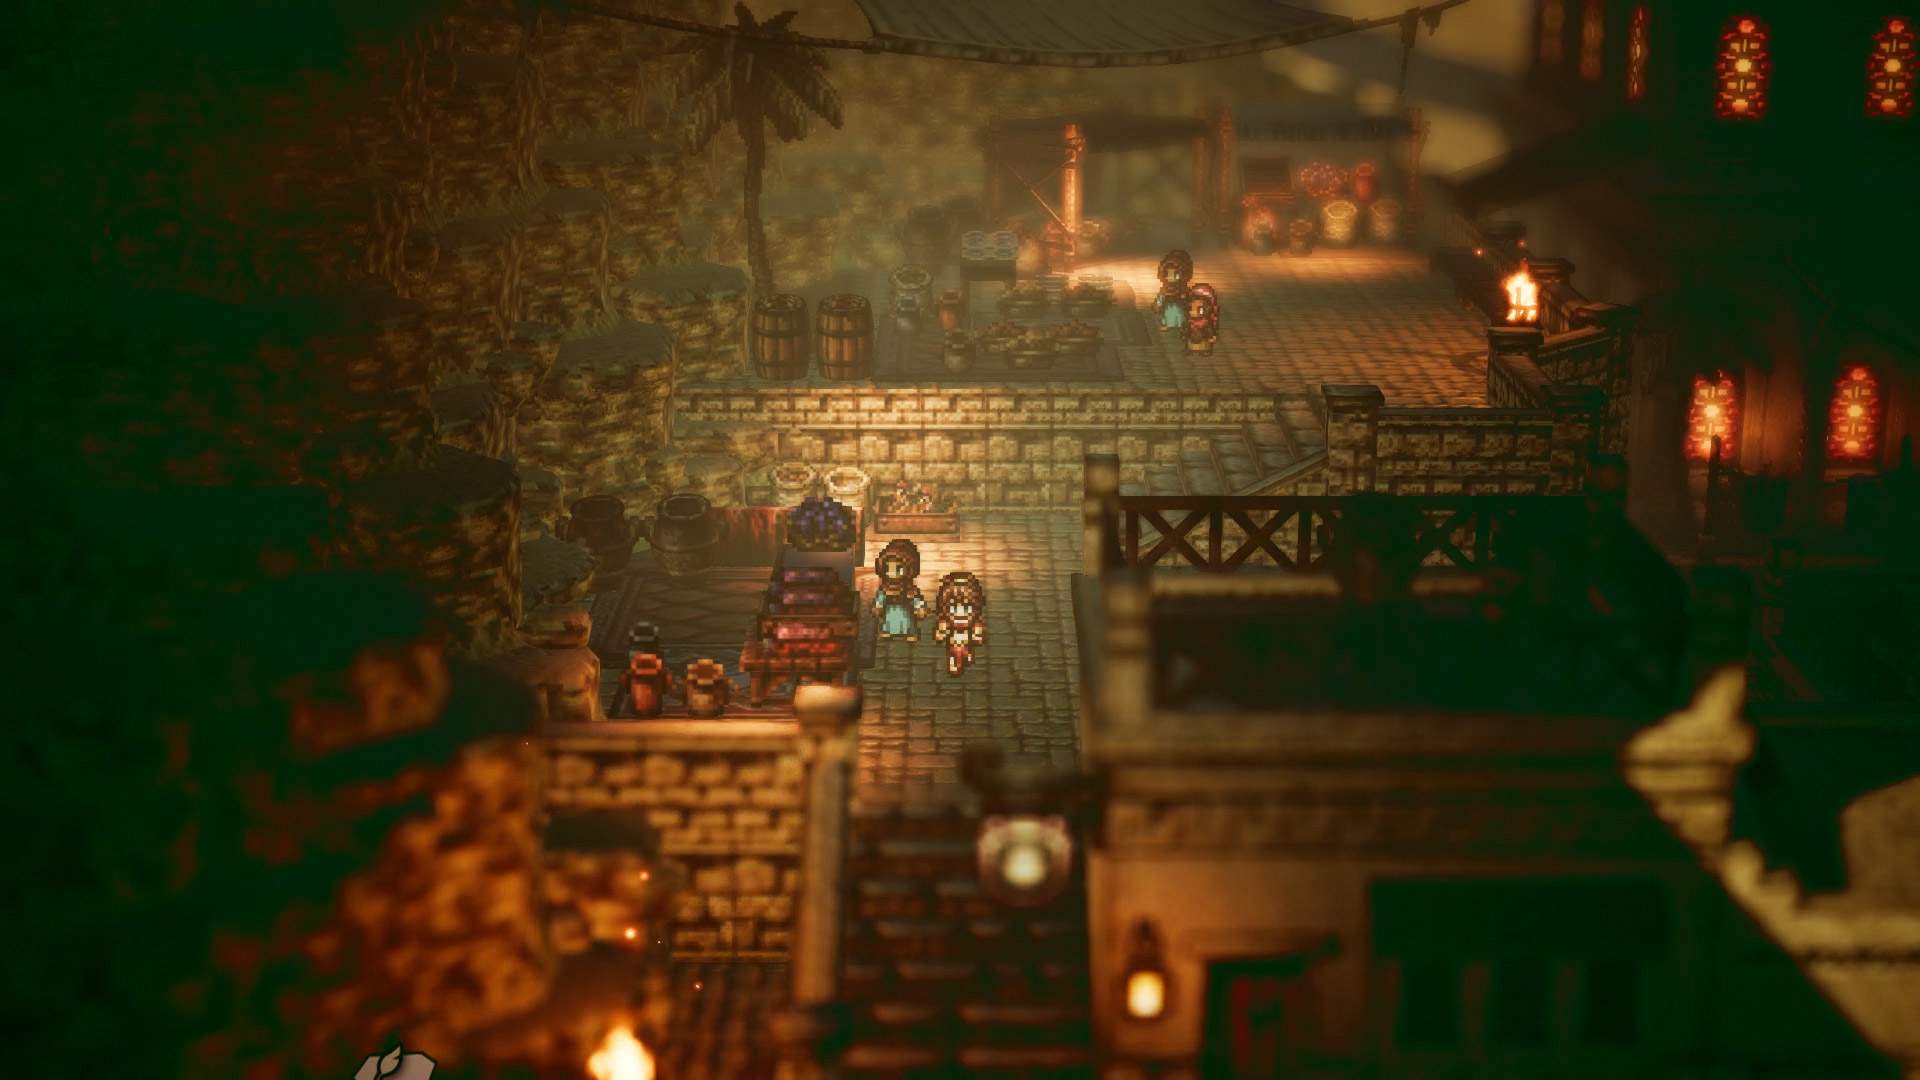 Capture d'écran montrant Primrose croisant un autre personnage au milieu d'une ville de style médiéval.